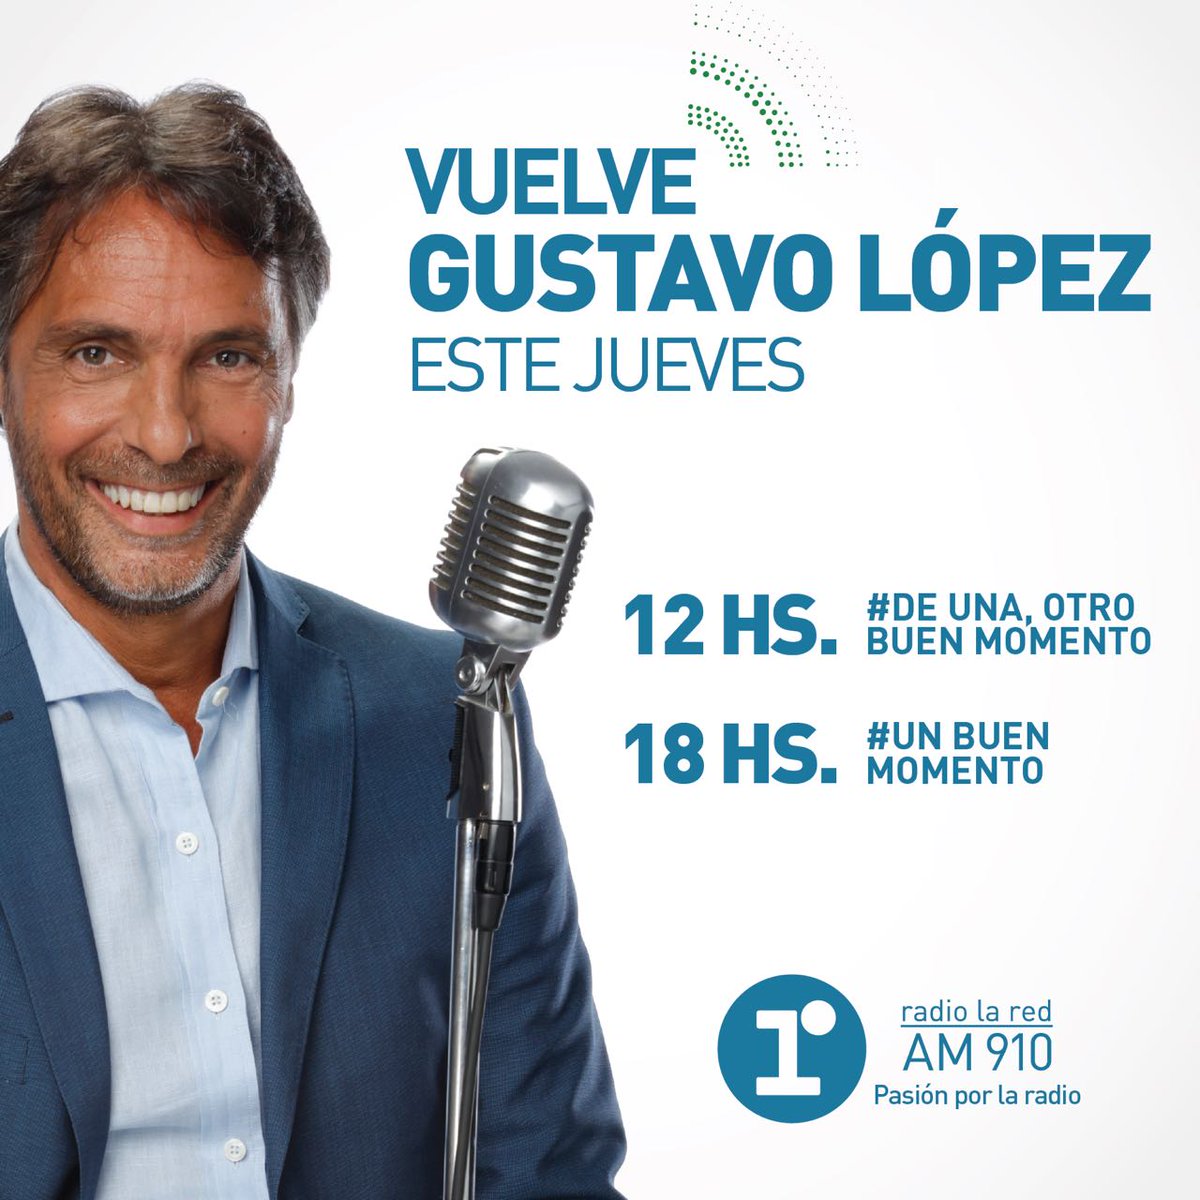 Radio La Red - AM 910 📻 on Twitter: "Este Jueves 25... Vuelve Gustavo Lopez aire de @radiolared Desde las en y a las 18 en #UnBuenMomento https://t.co/aascIInM5a" /